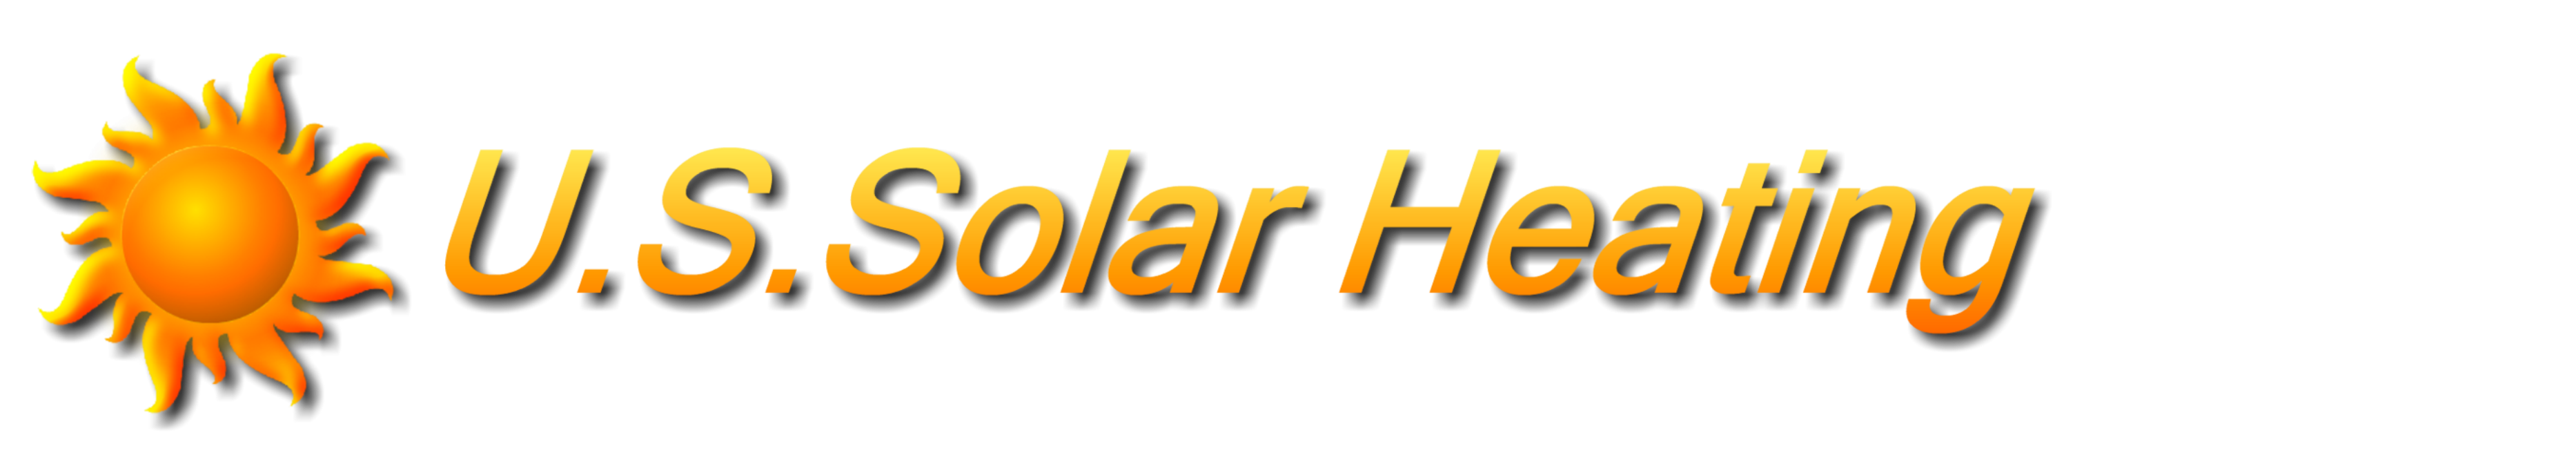 Solar Air Heater Systems